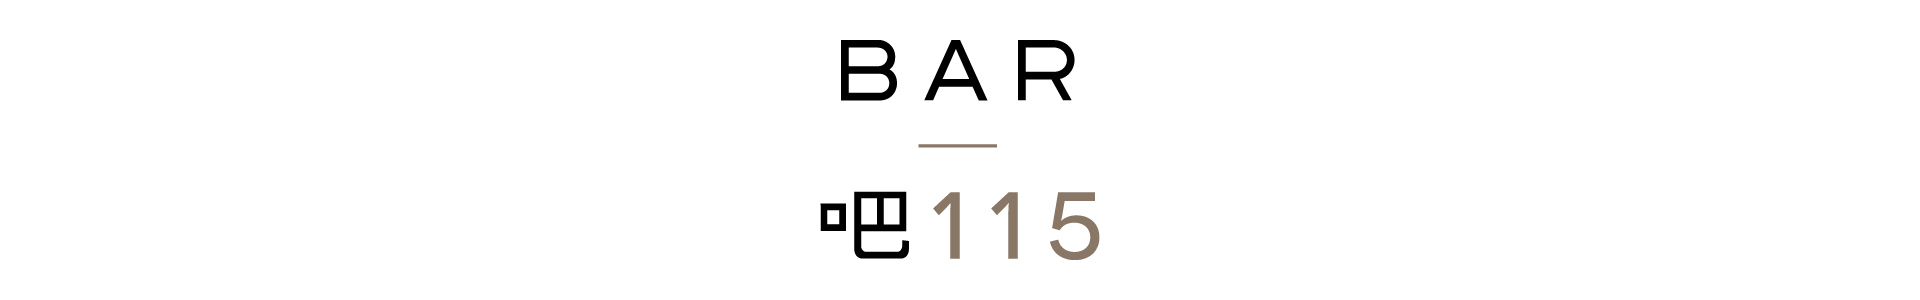 bar 115 logo